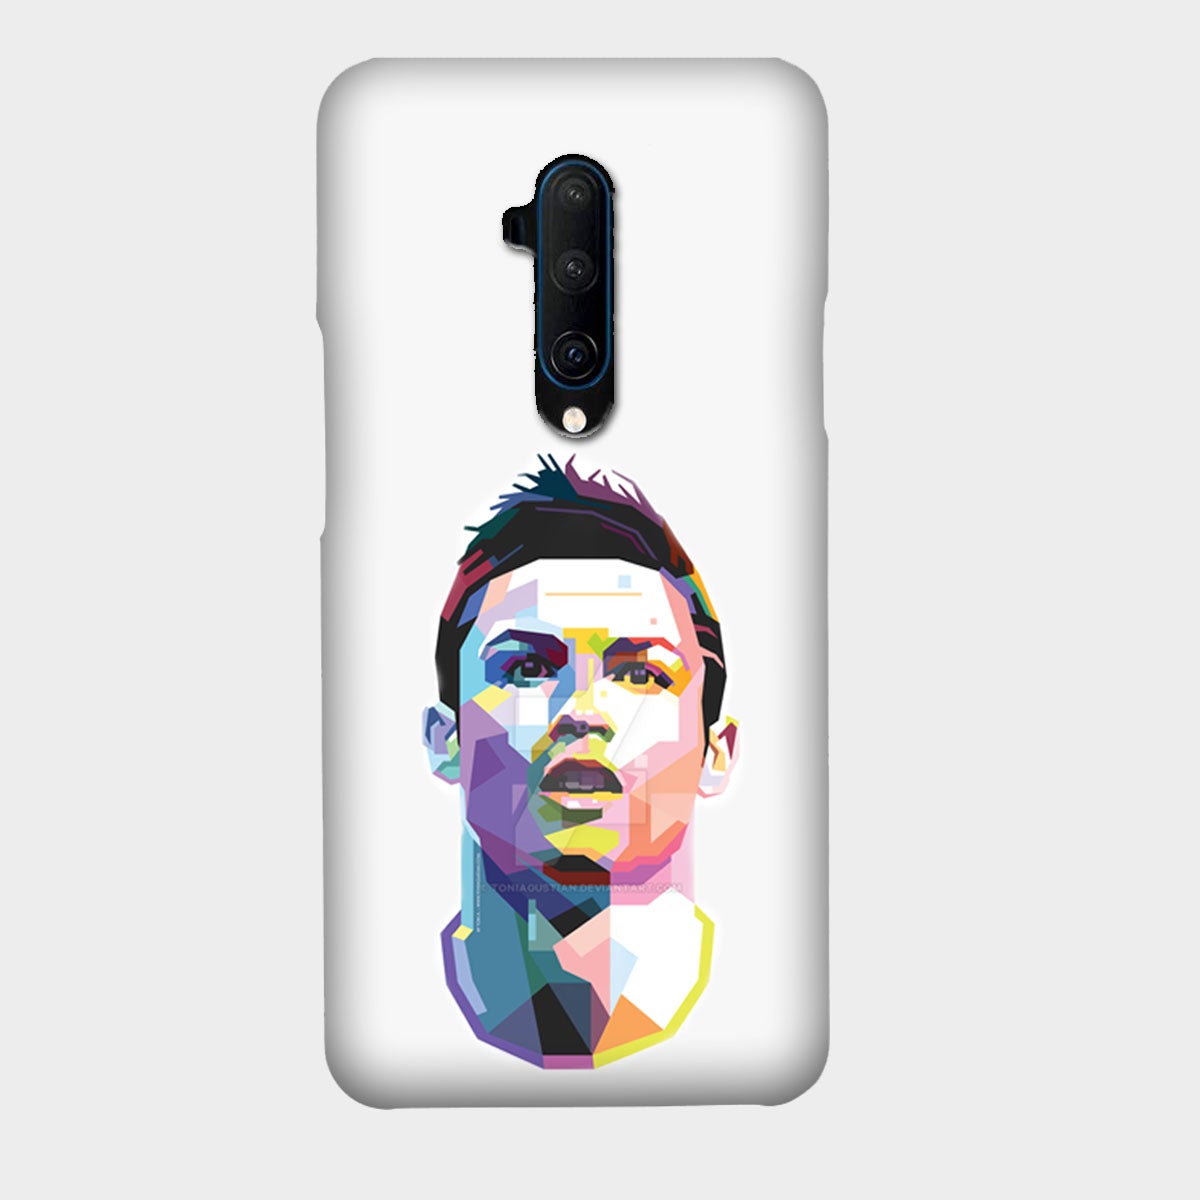 Cristiano Ronaldo - CR7 - White - Mobile Phone Cover - Hard Case - OnePlus